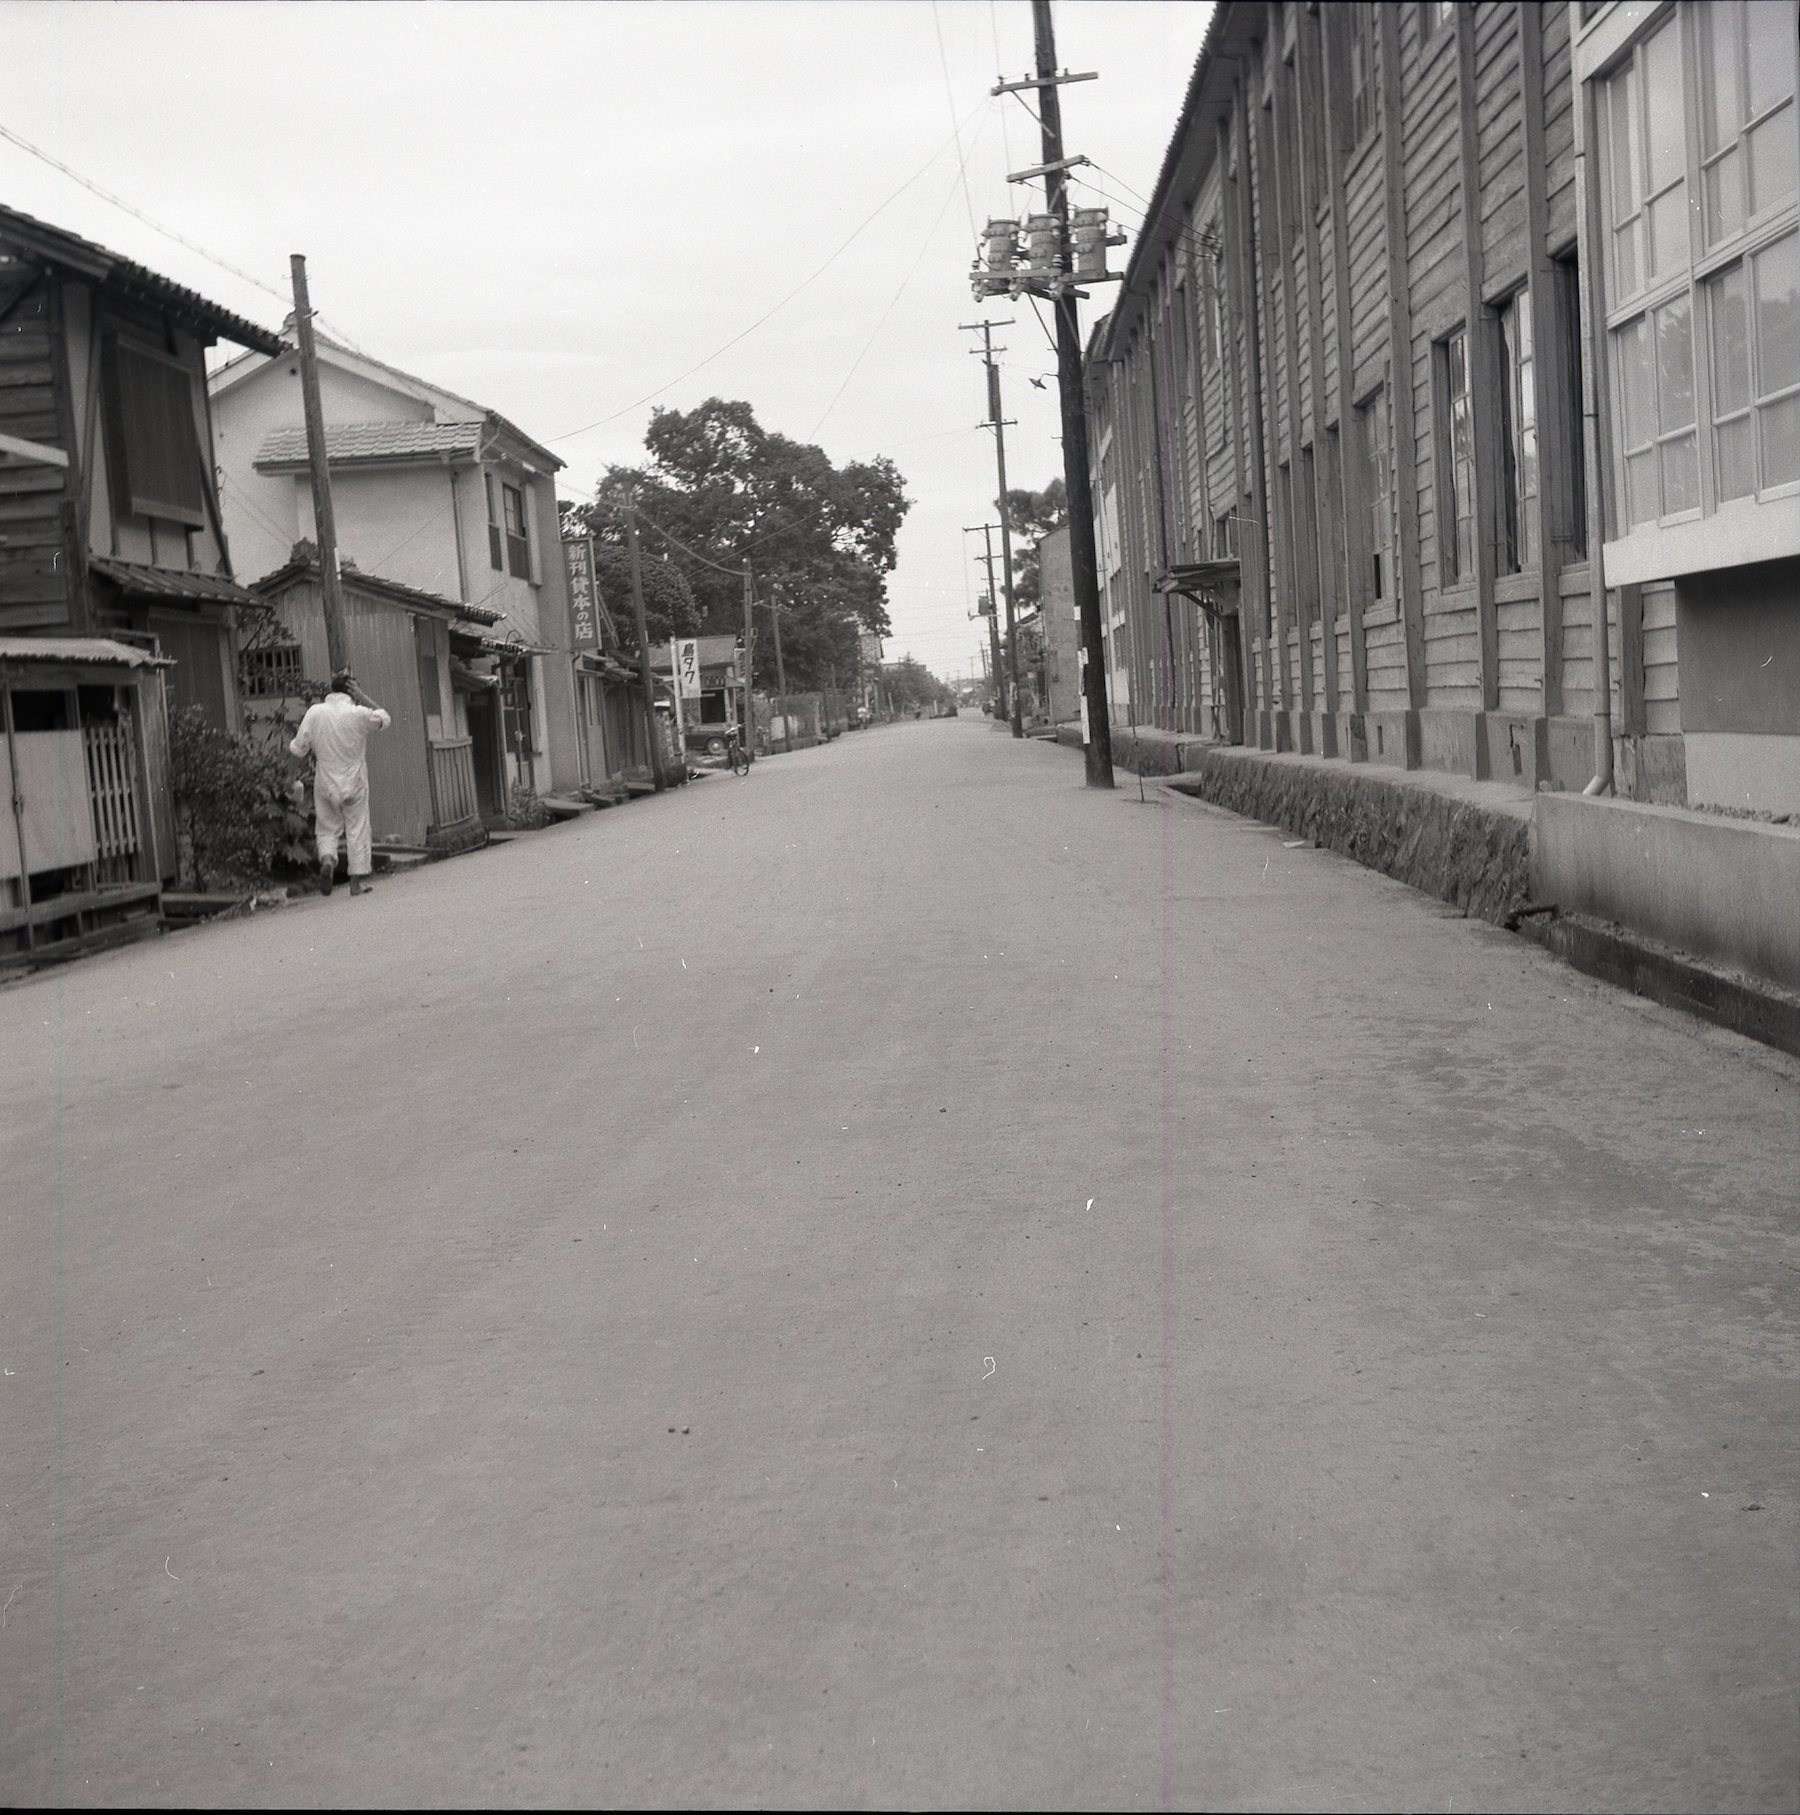 鳥取家政高等学校横の舗装道路's image 1